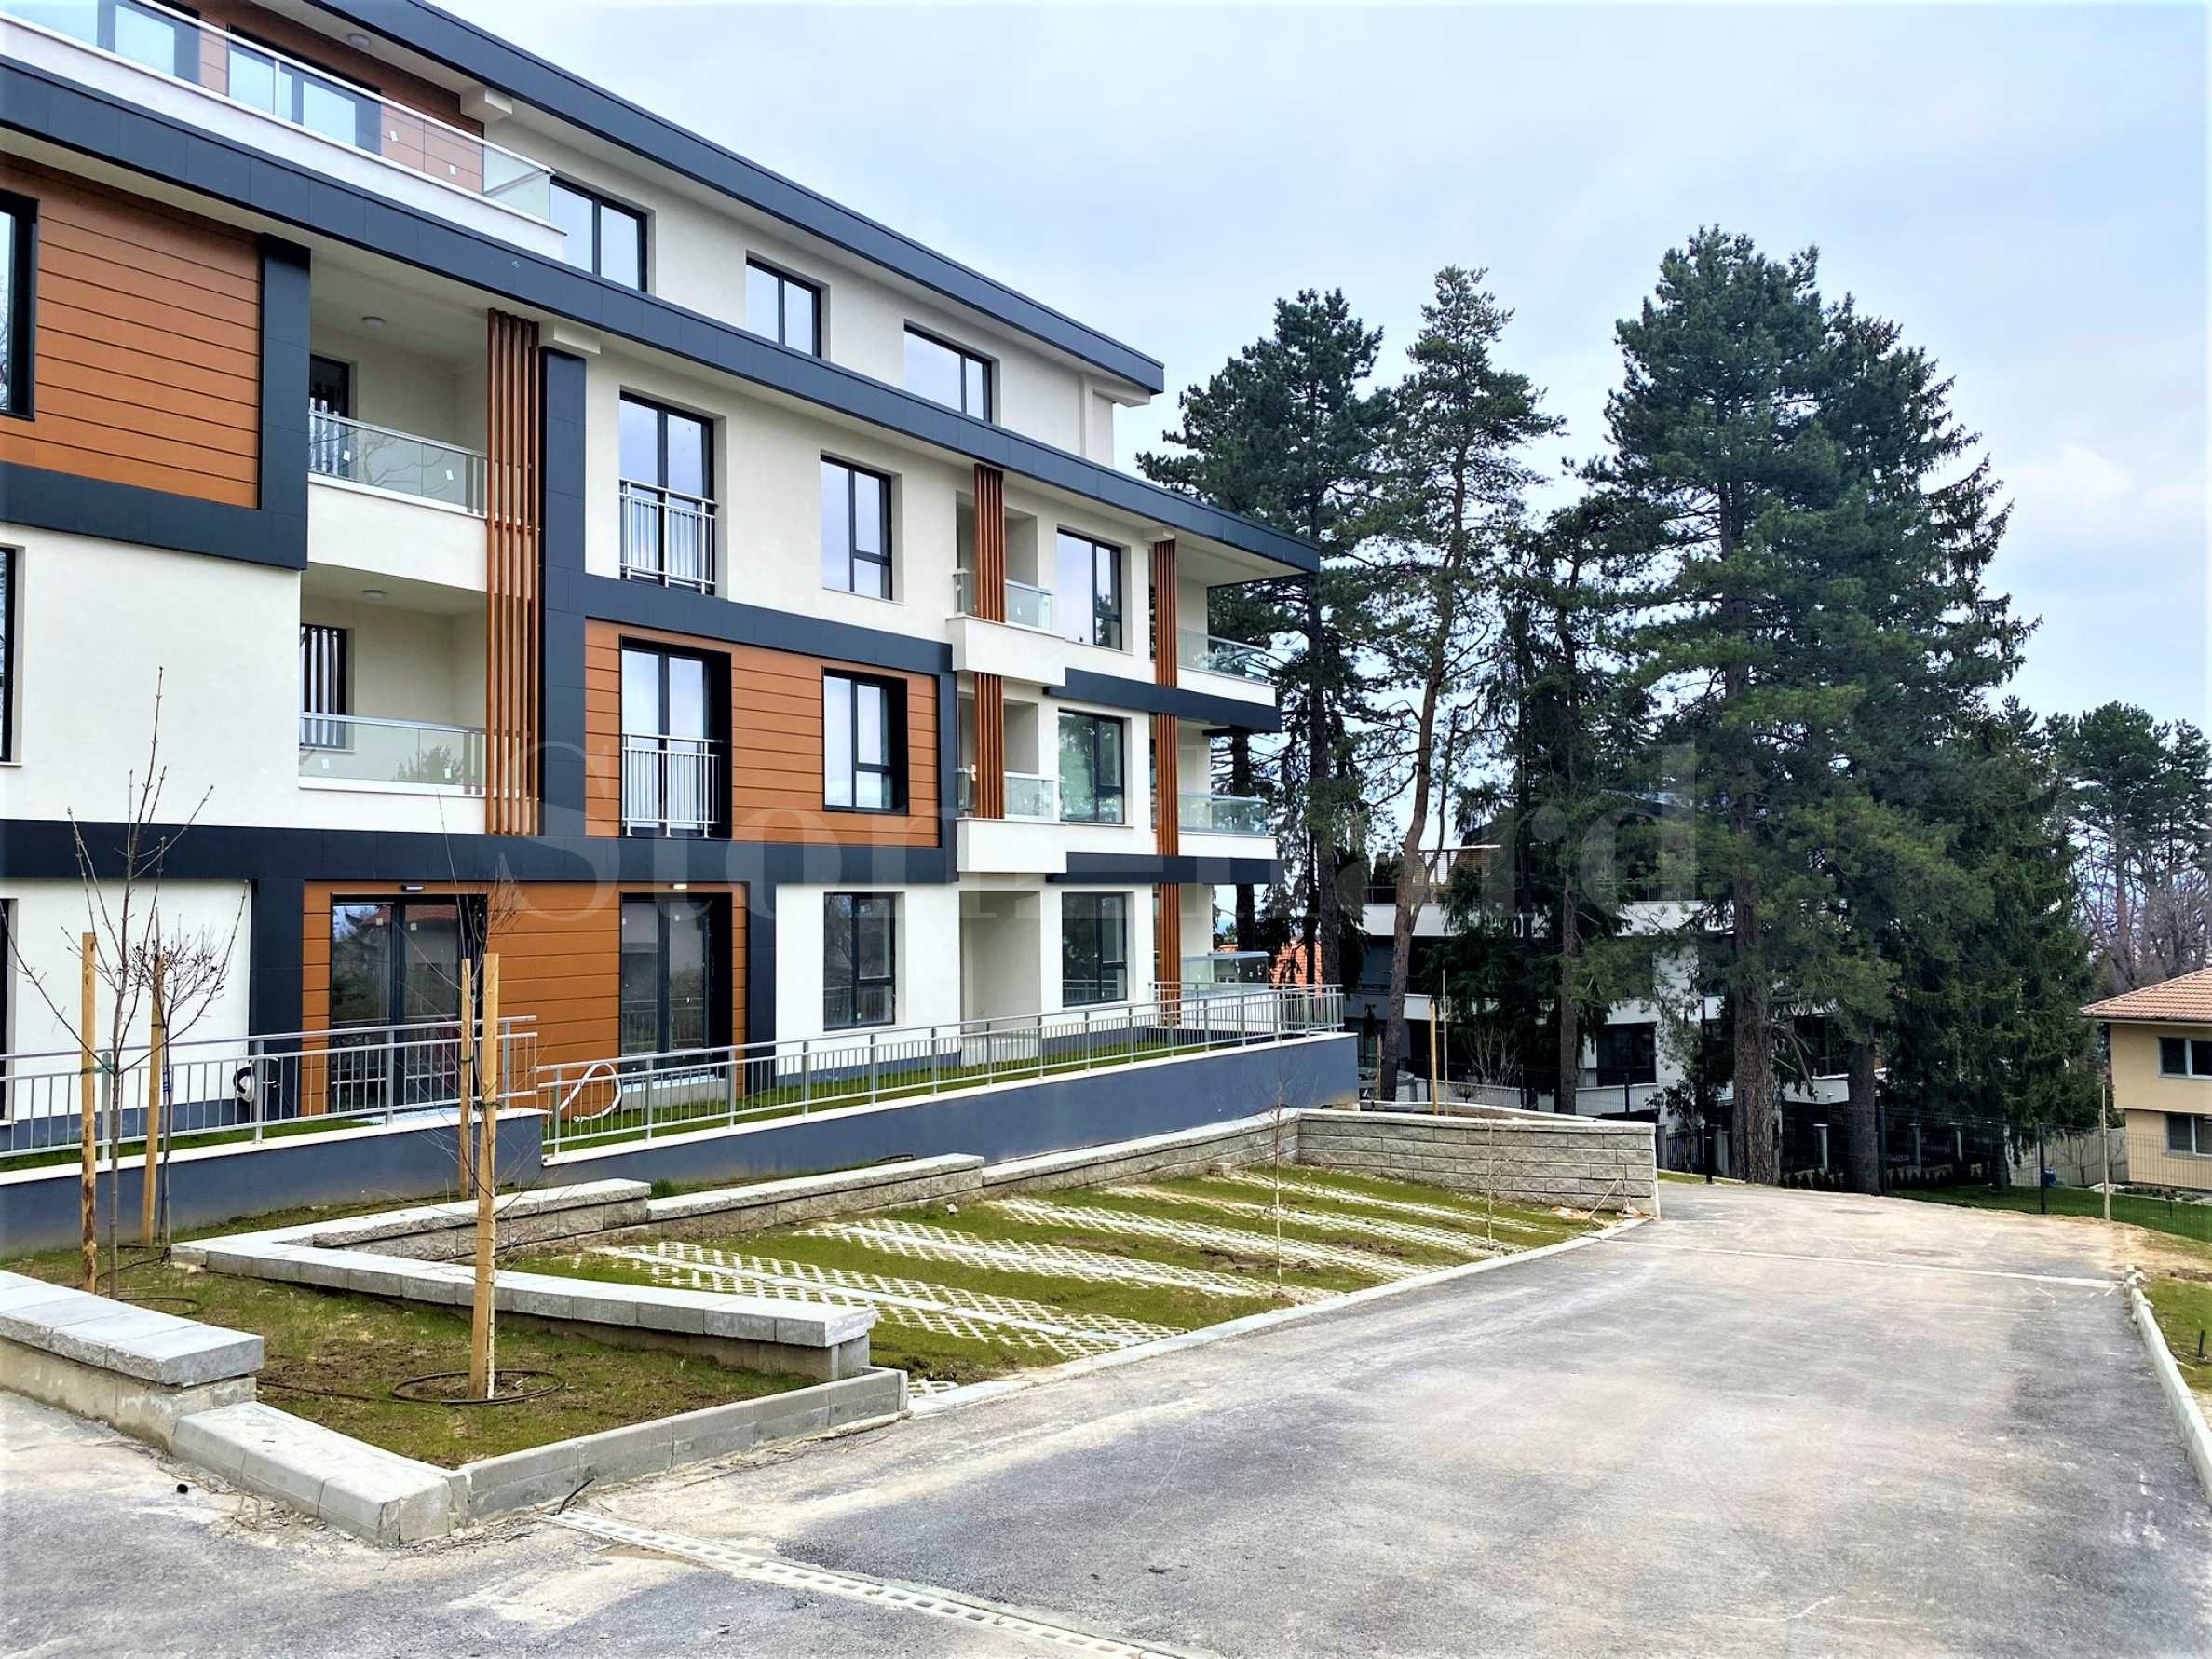 Апартаменти в комплекс пред Акт 16 с богато озеленена среда и гледки към Витоша 1 - Stonehard